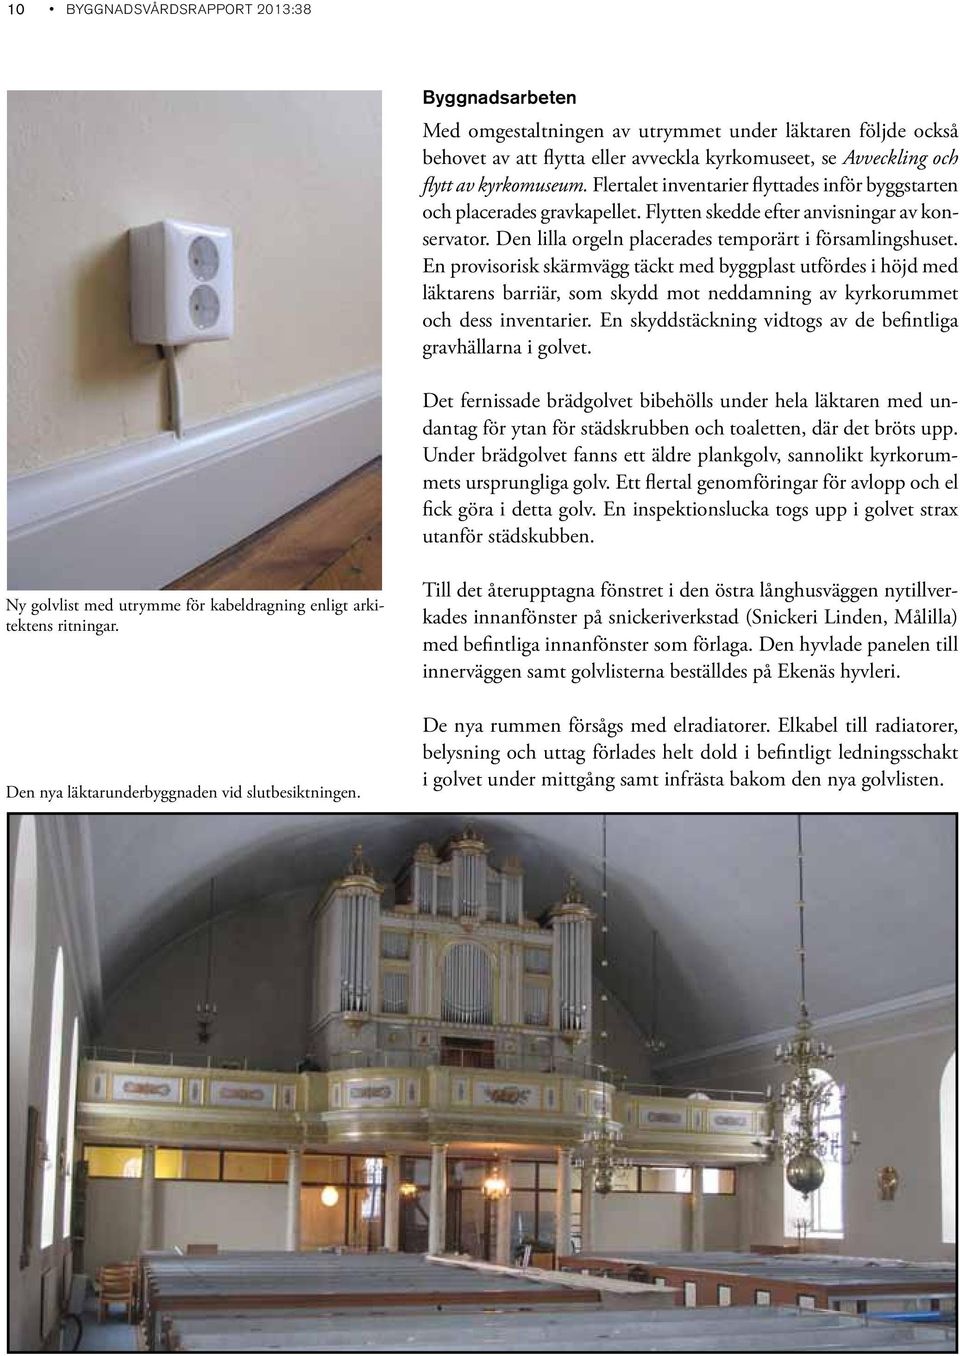 En provisorisk skärmvägg täckt med byggplast utfördes i höjd med läktarens barriär, som skydd mot neddamning av kyrkorummet och dess inventarier.